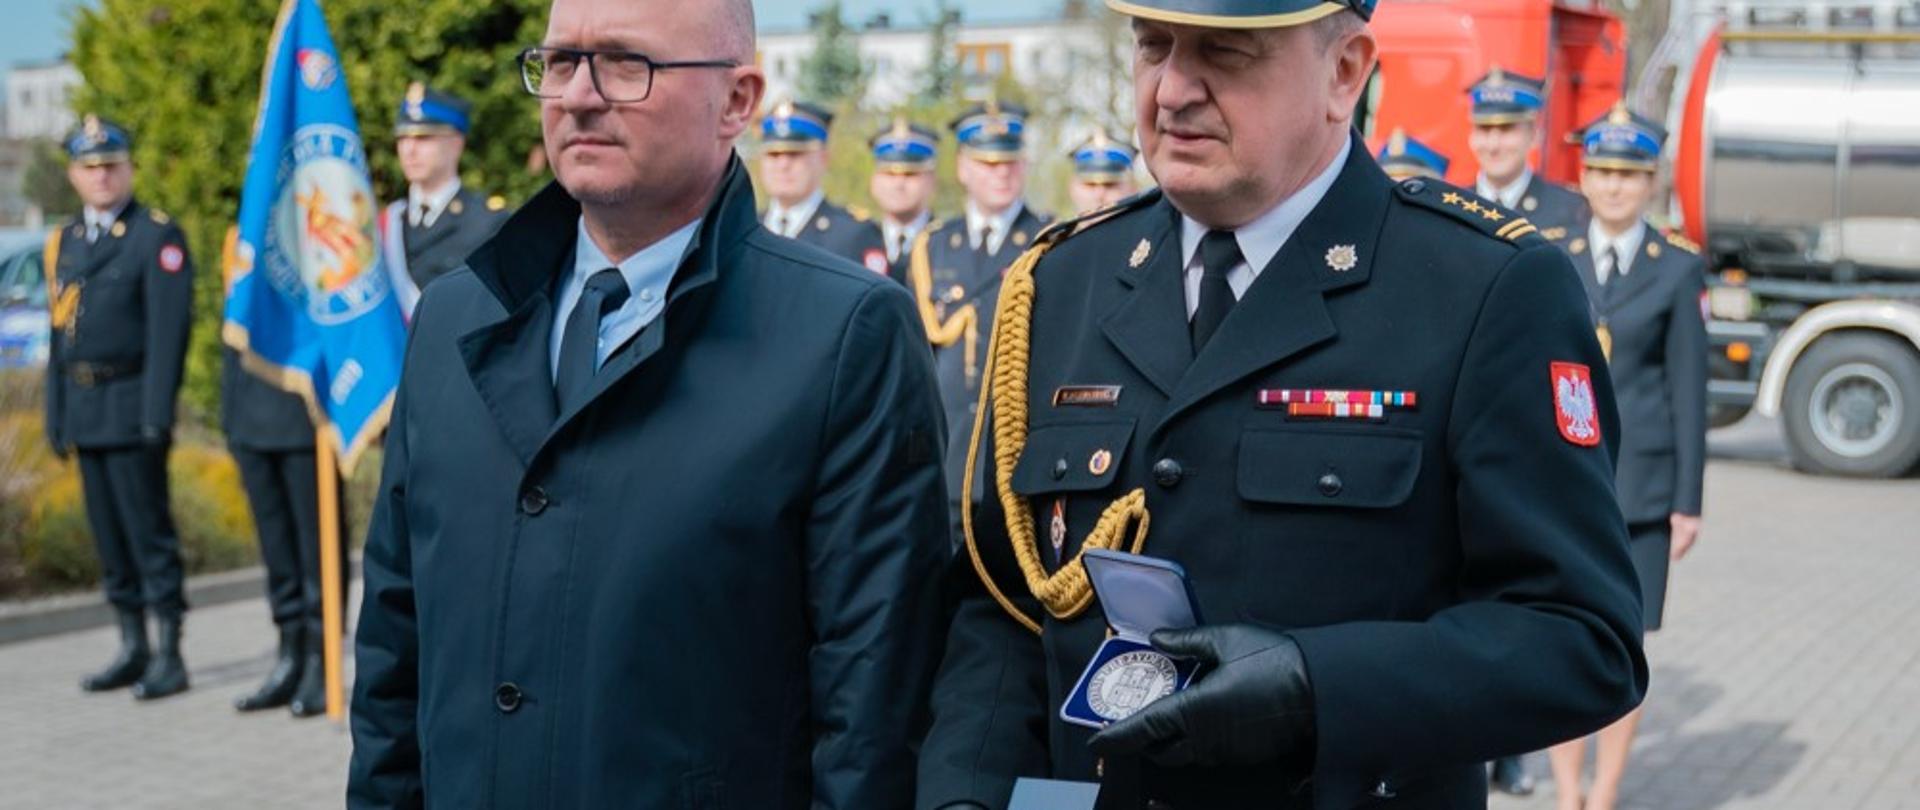 Prezydent - mężczyzna w granatowym płaszczu i Komendant w mundurze galowym prezentują medal. W tle załogo w mundurach galowych.